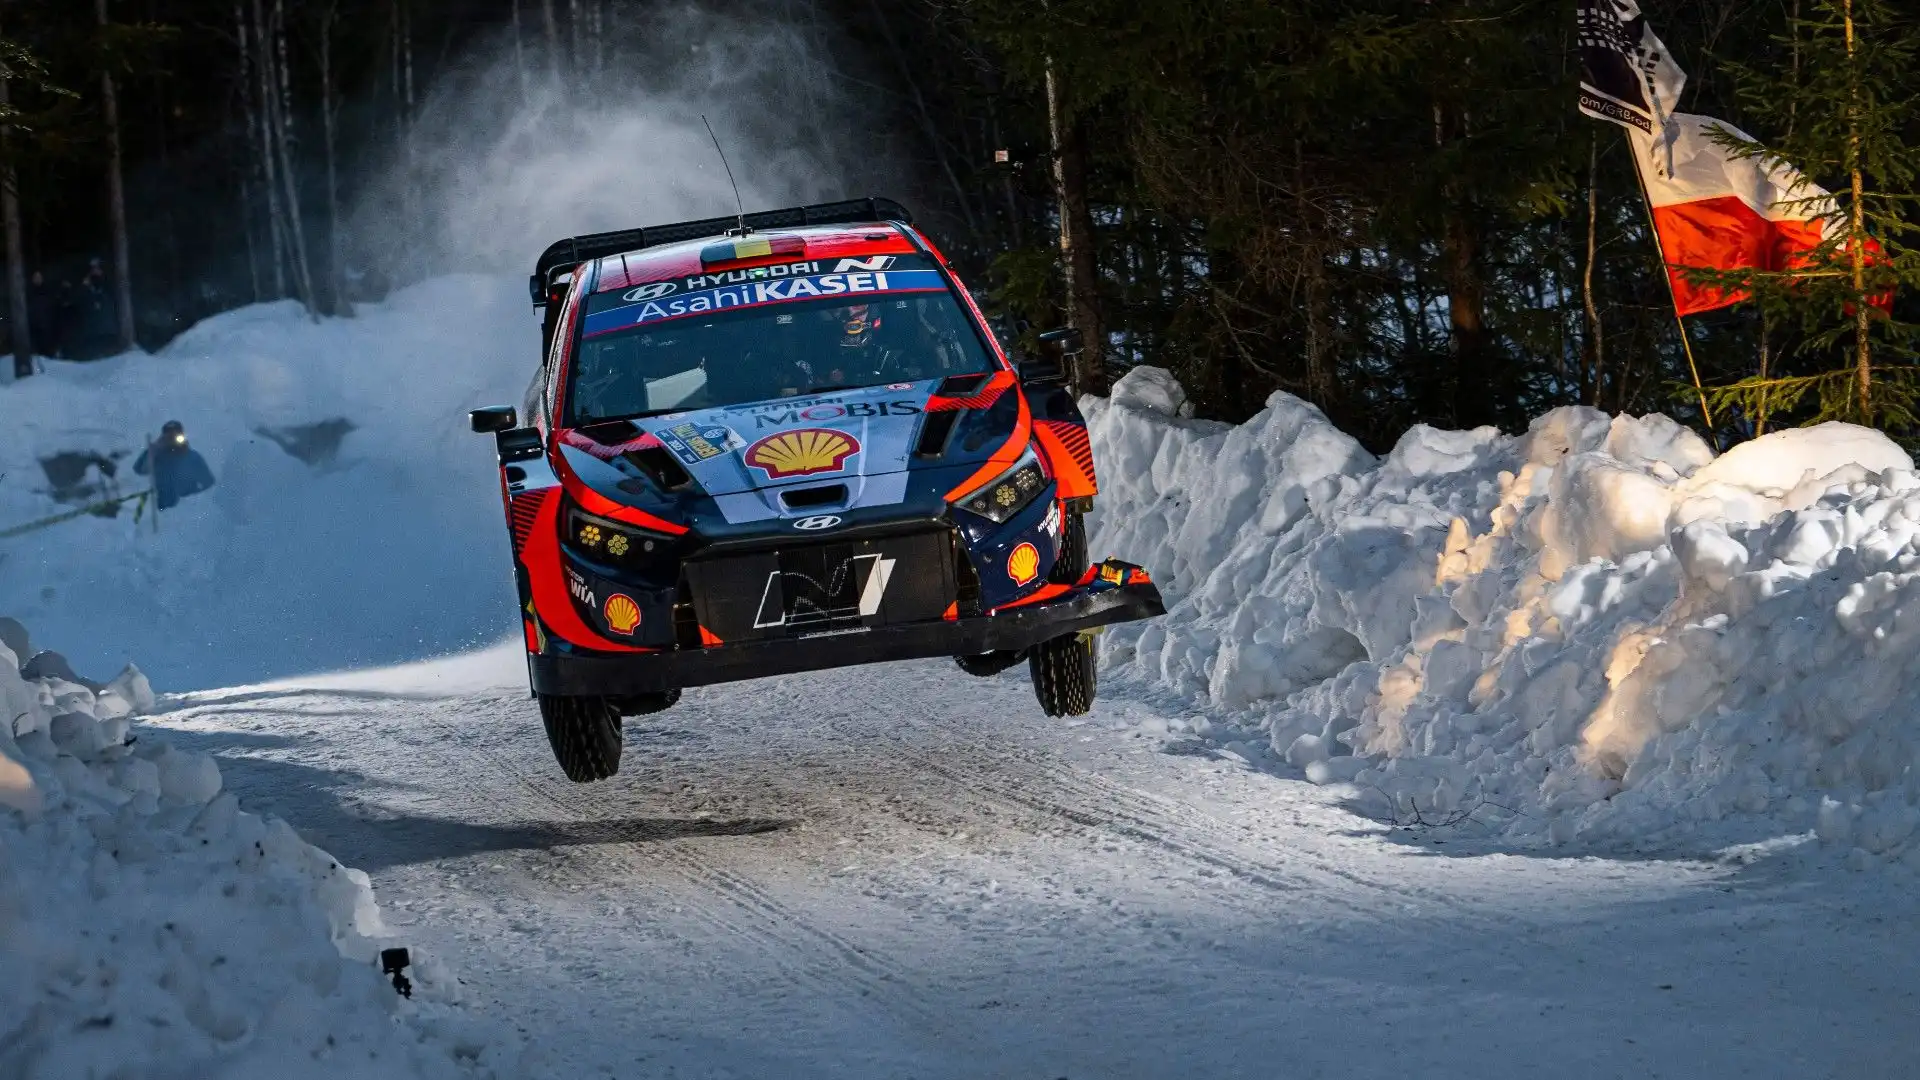 Spettacolari le immagini che arrivano dal Rally di Svezia